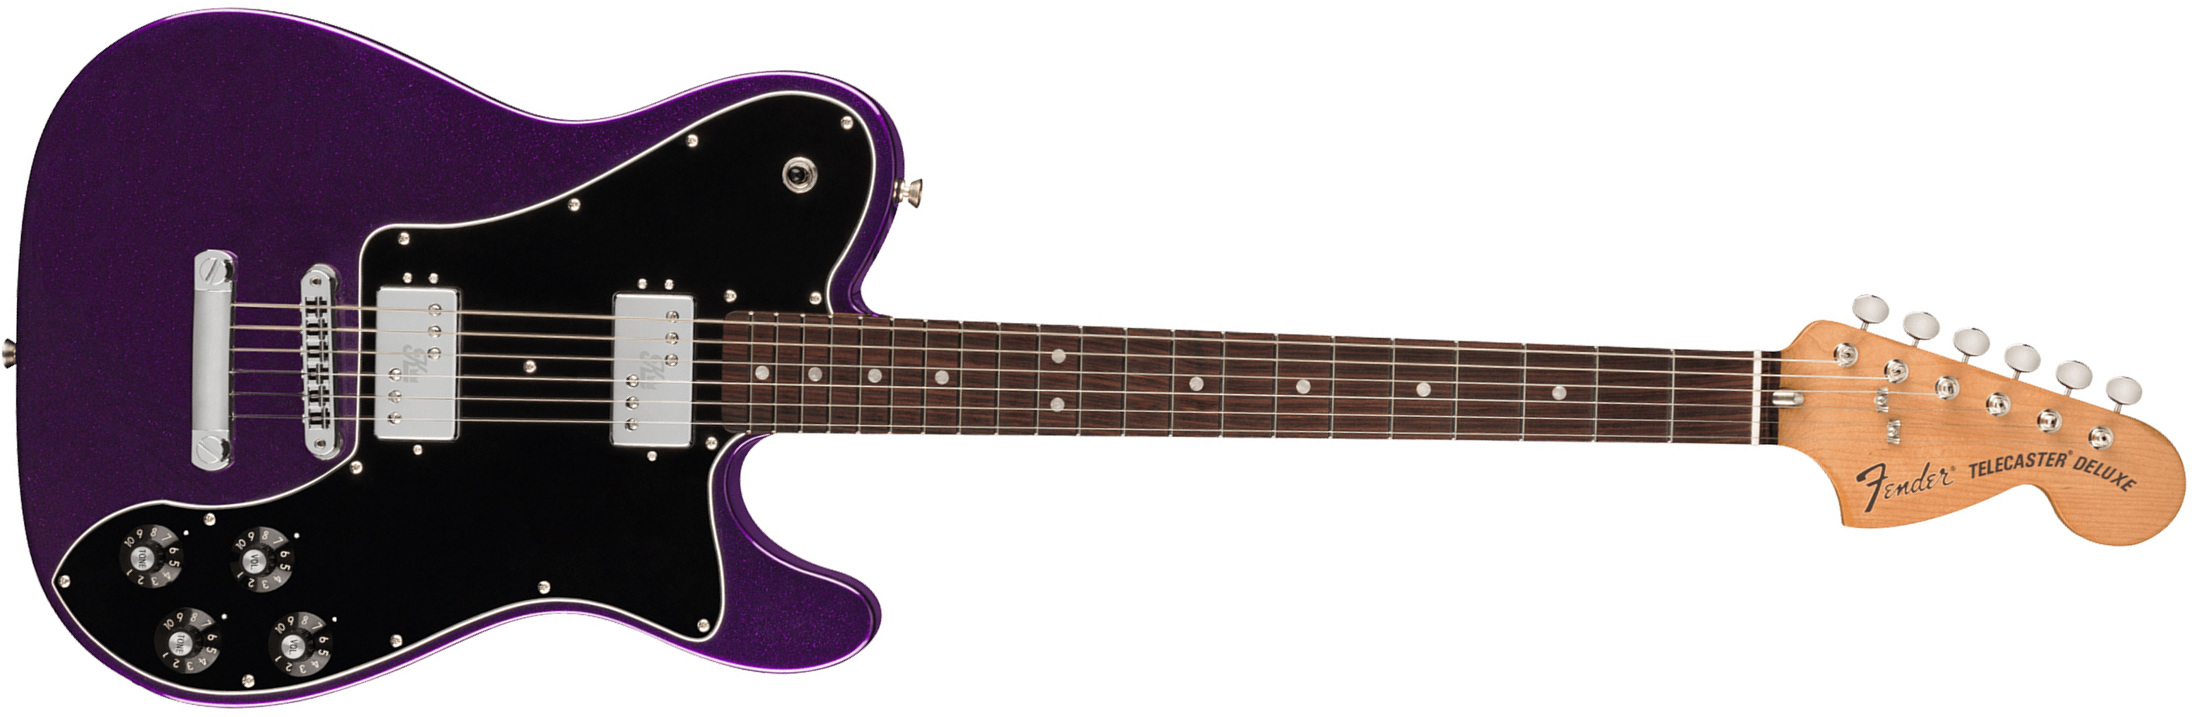 Fender Kingfish Tele Deluxe Usa Signature Hh Ht Rw - Mississippi Night - E-Gitarre in Teleform - Main picture